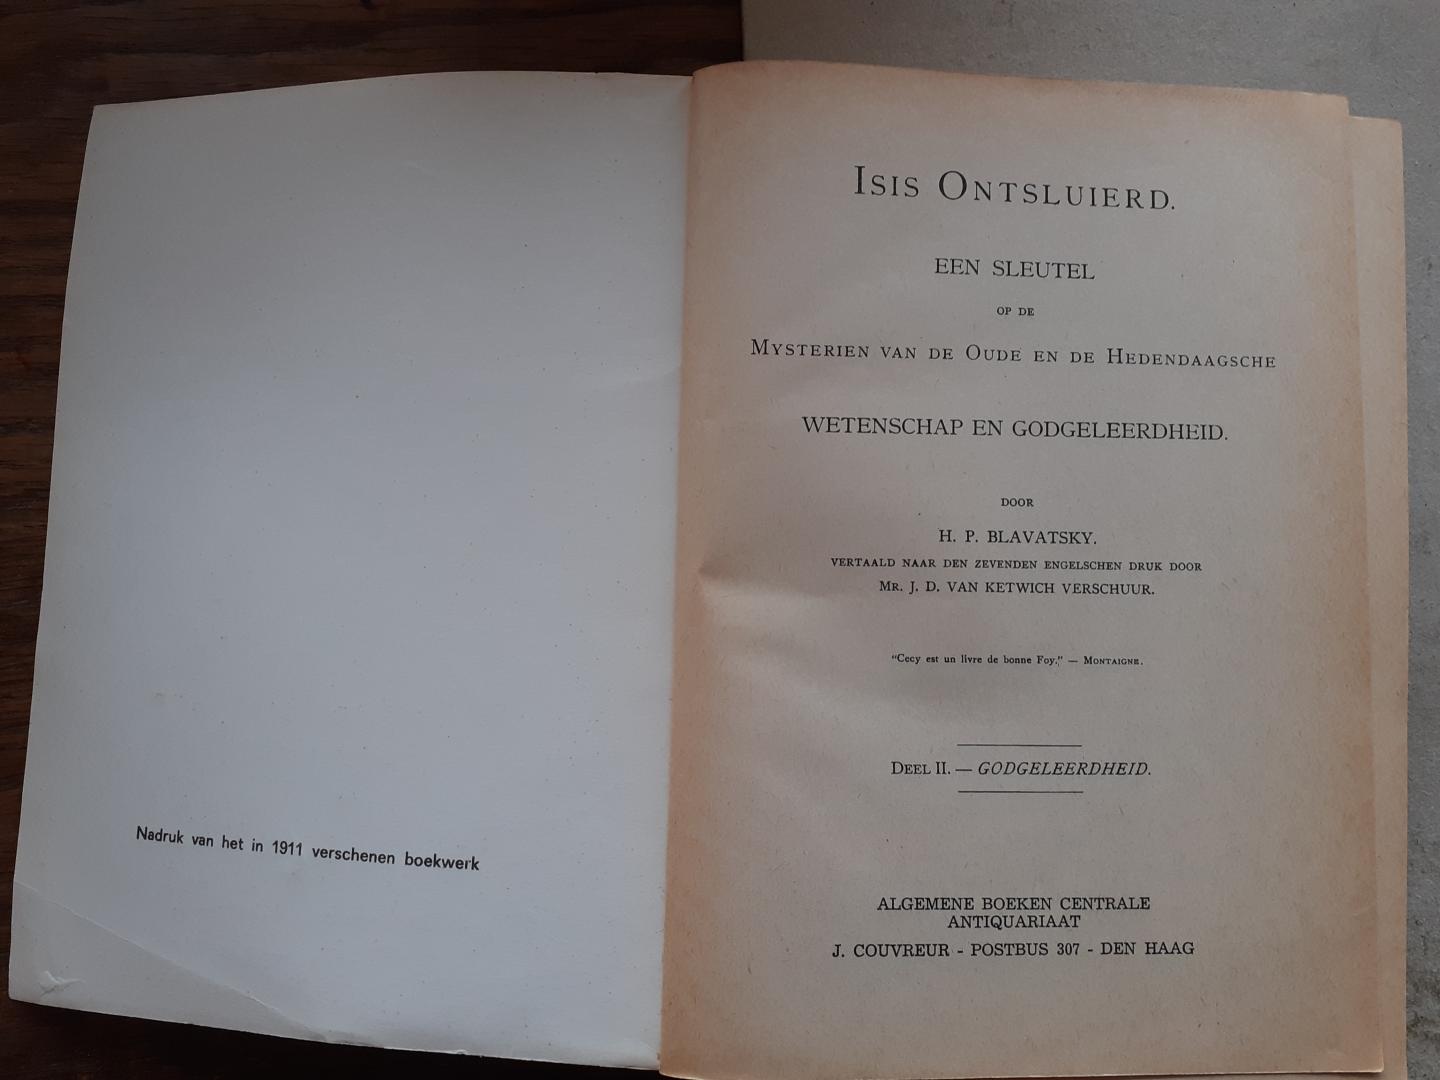 Blavatsky, H.P. - Isis ontsluierd / een sleutel tot de mysteries van oude en moderne wetenschap en religie